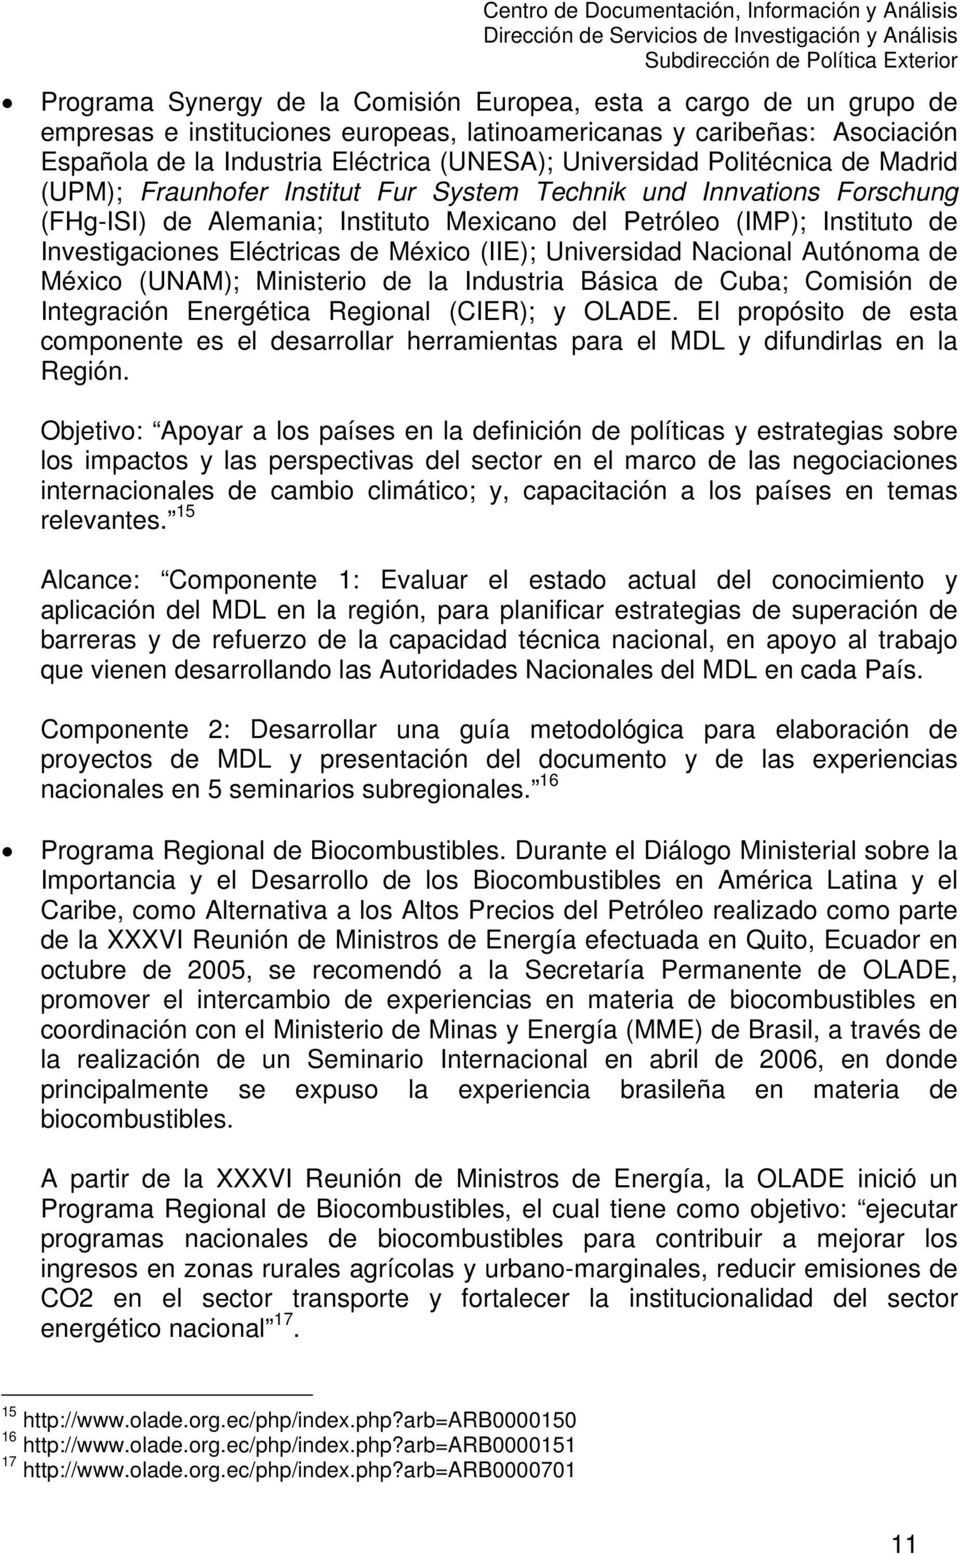 Petróleo (IMP); Instituto de Investigaciones Eléctricas de México (IIE); Universidad Nacional Autónoma de México (UNAM); Ministerio de la Industria Básica de Cuba; Comisión de Integración Energética